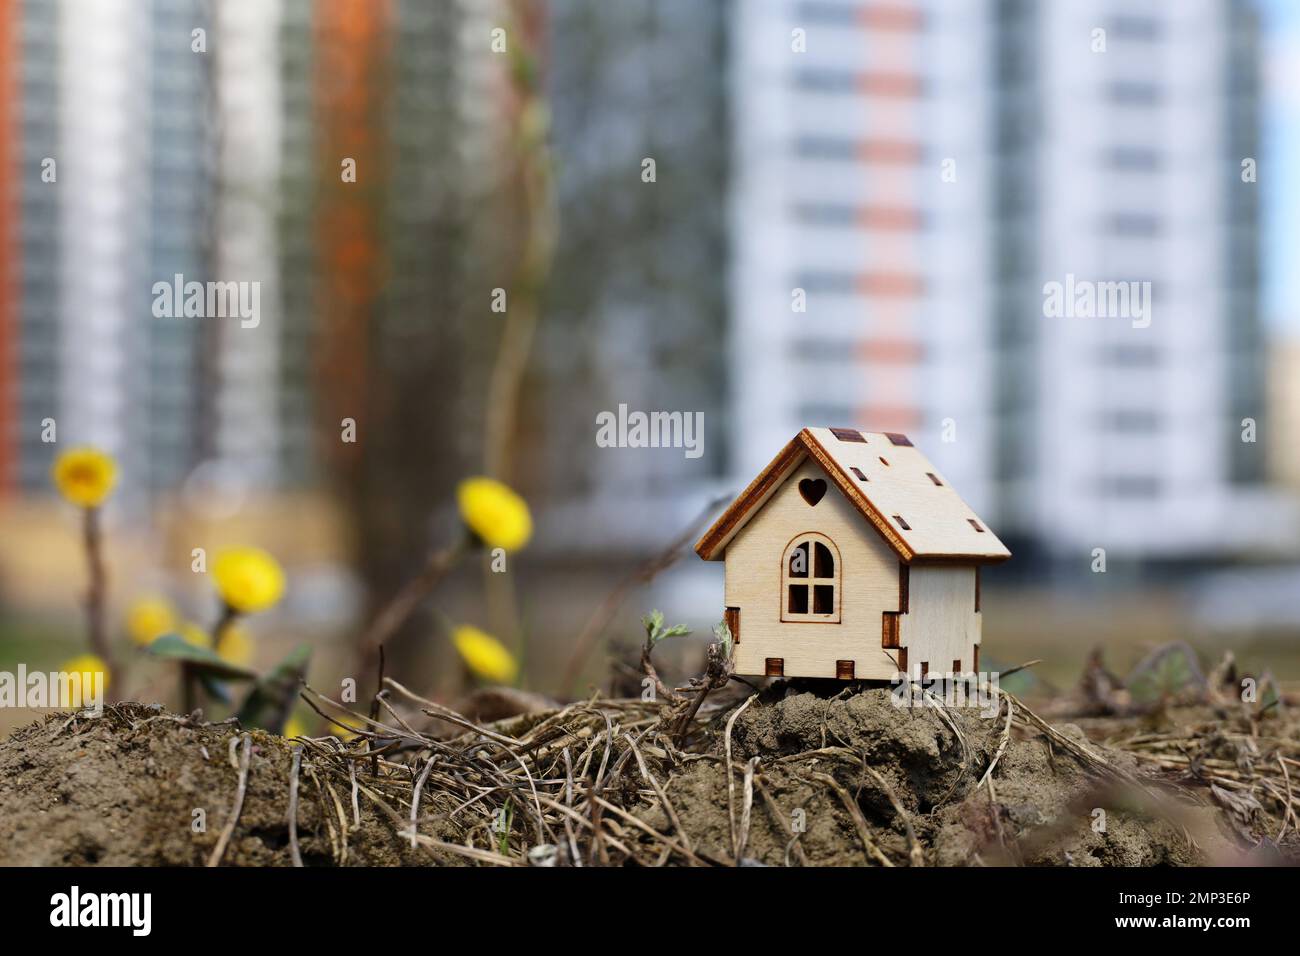 Holzhausmodell und Frühlingsblumen auf dem Hintergrund von Hochhäusern. Konzept von Landhaus, Immobilien Stockfoto